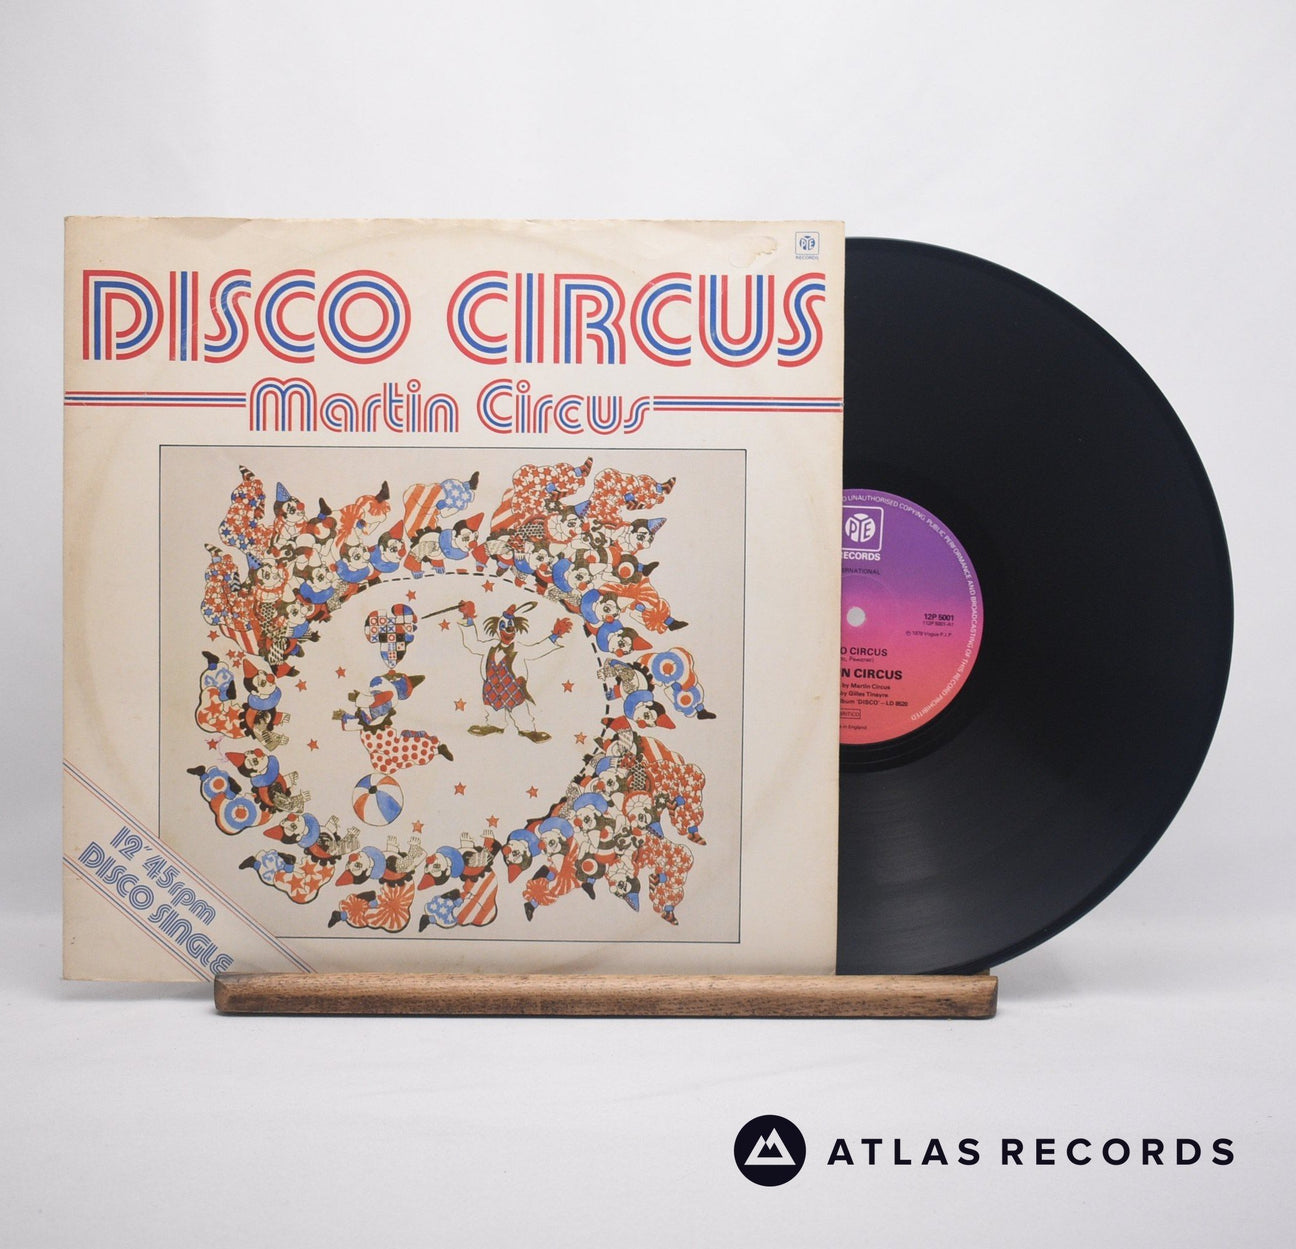 Martin Circus Disco Circus 12" Vinyl Record - Front Cover & Record